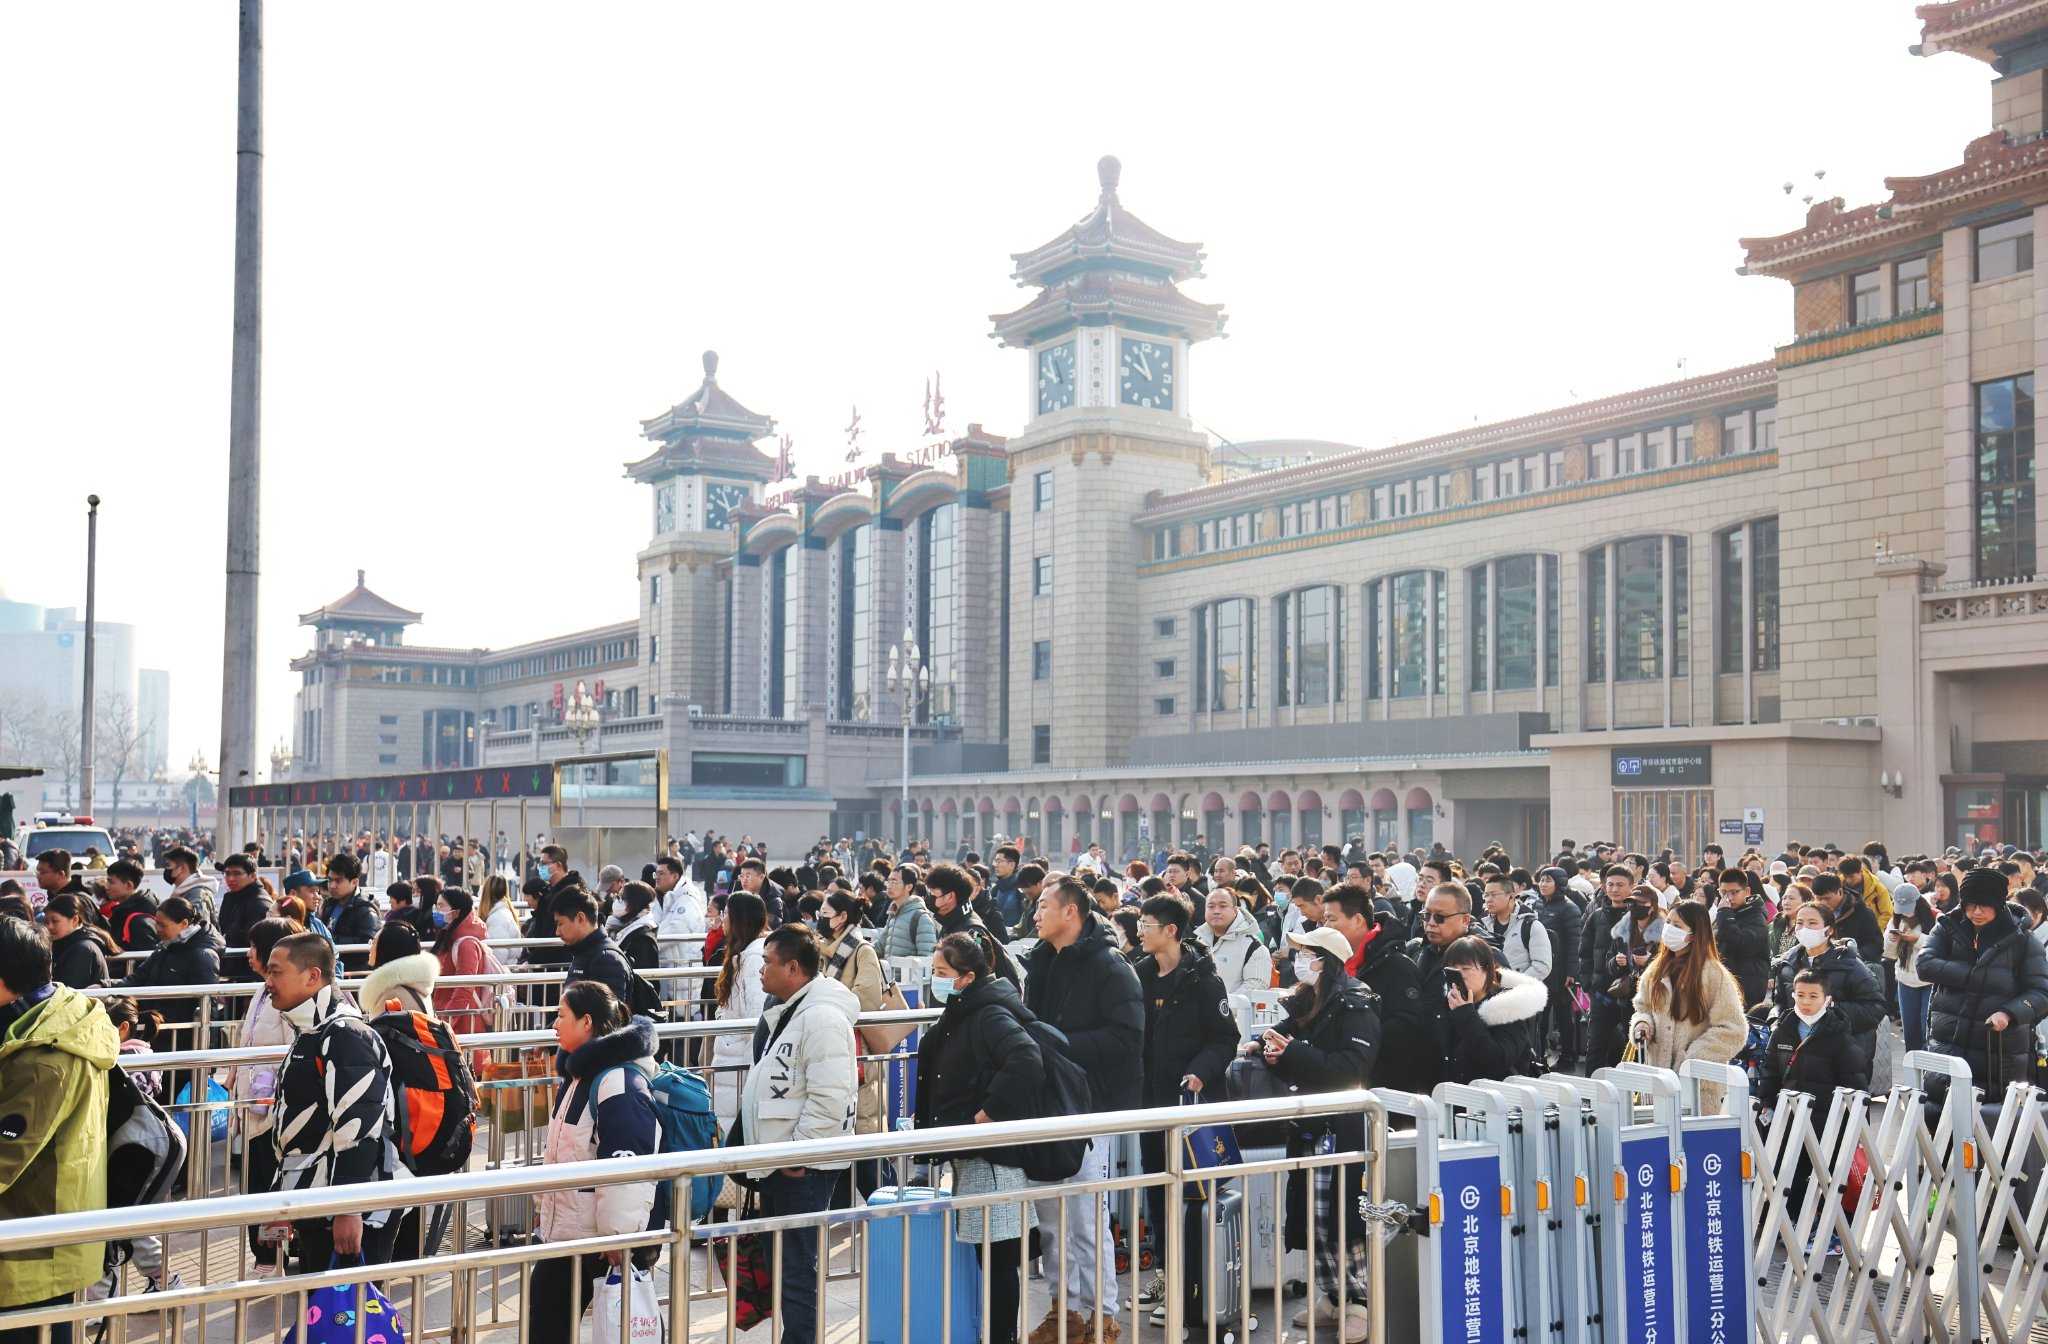 北京站迎来返程大客流，地铁进站口前排起长队